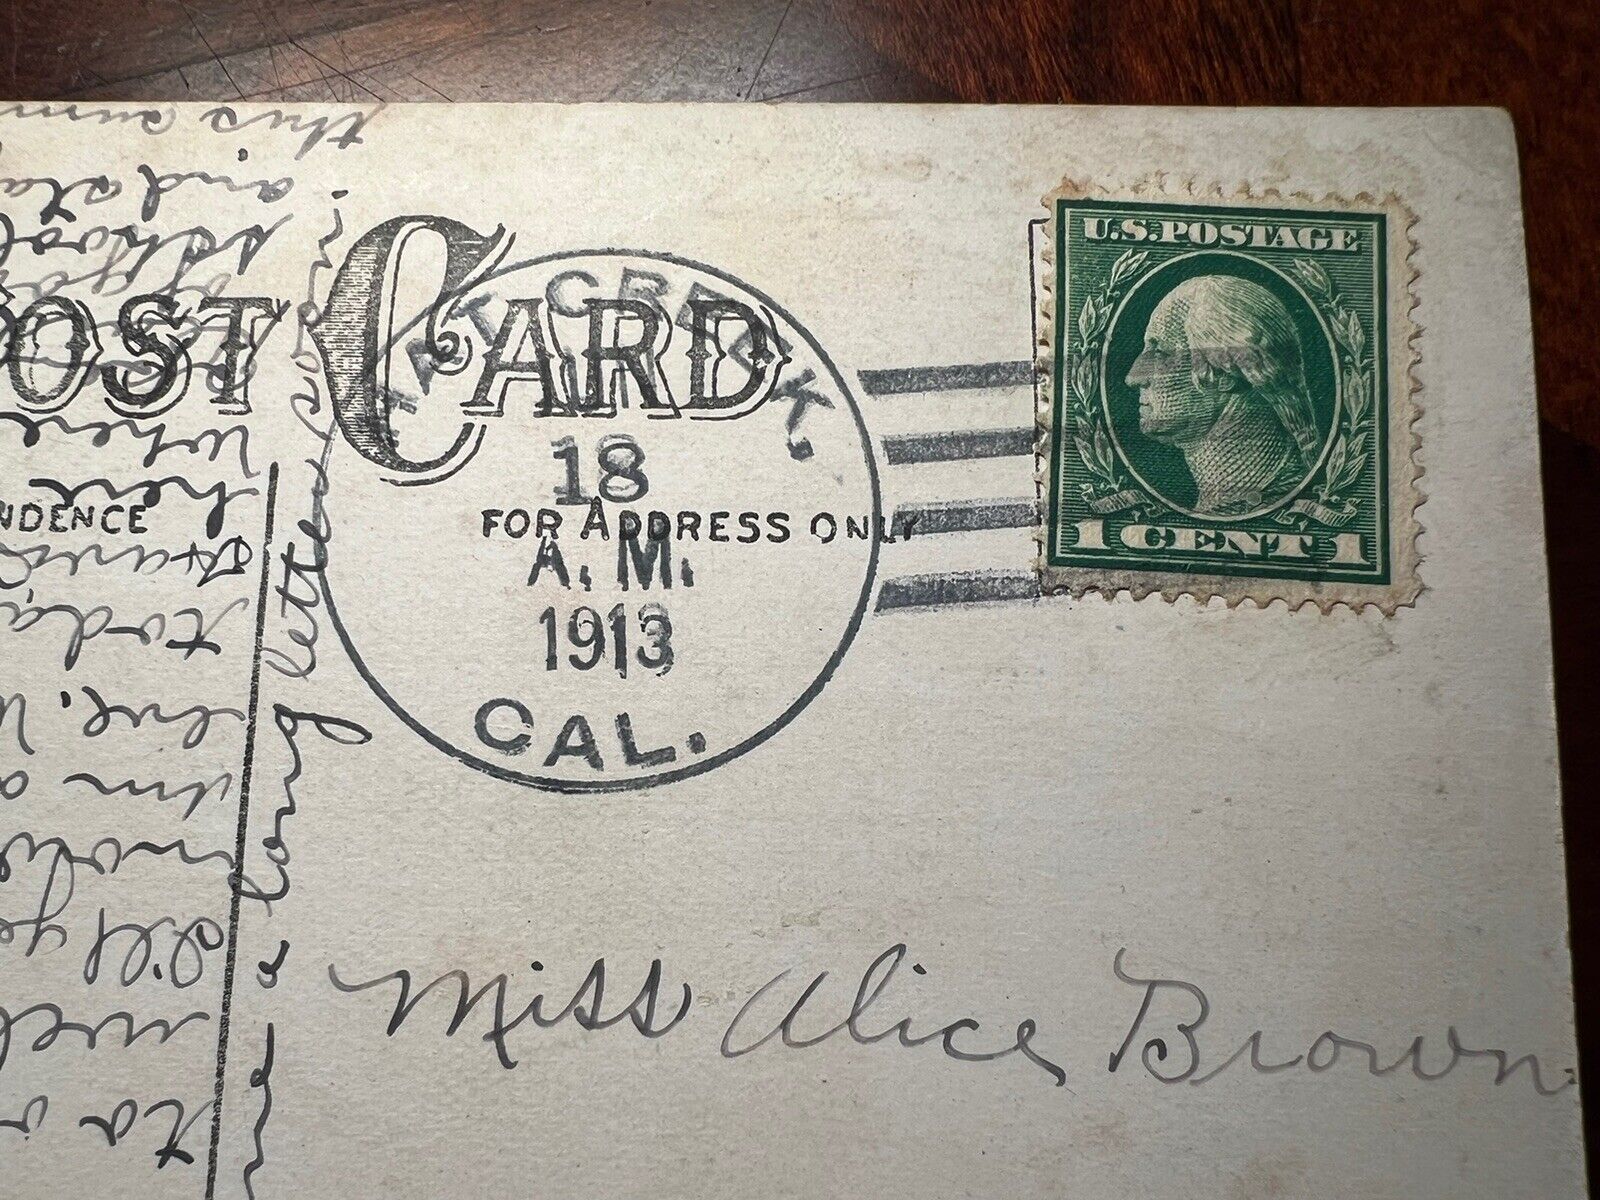 1913 Vintage Post Card with Hat Creek, CA Postmark